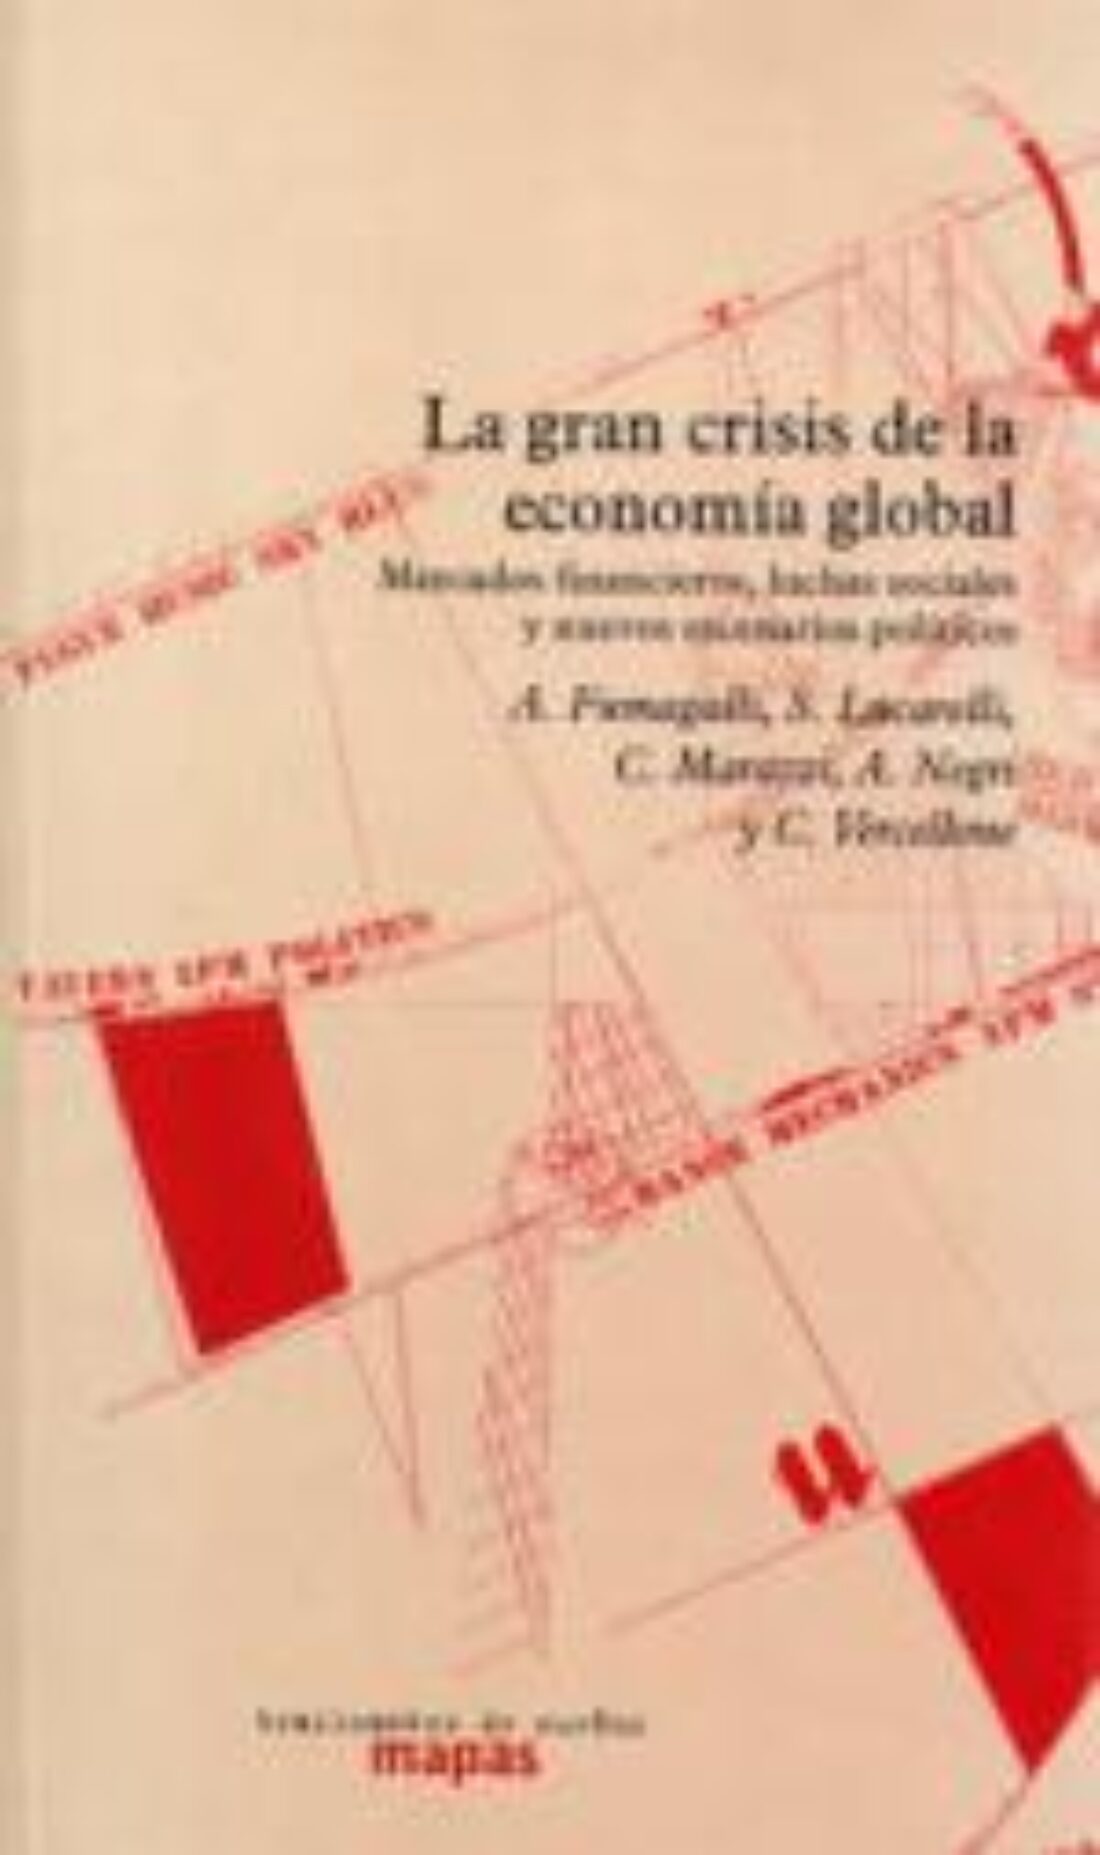 18 feb Madrid : Presentación-debate «La crisis de la economía global»